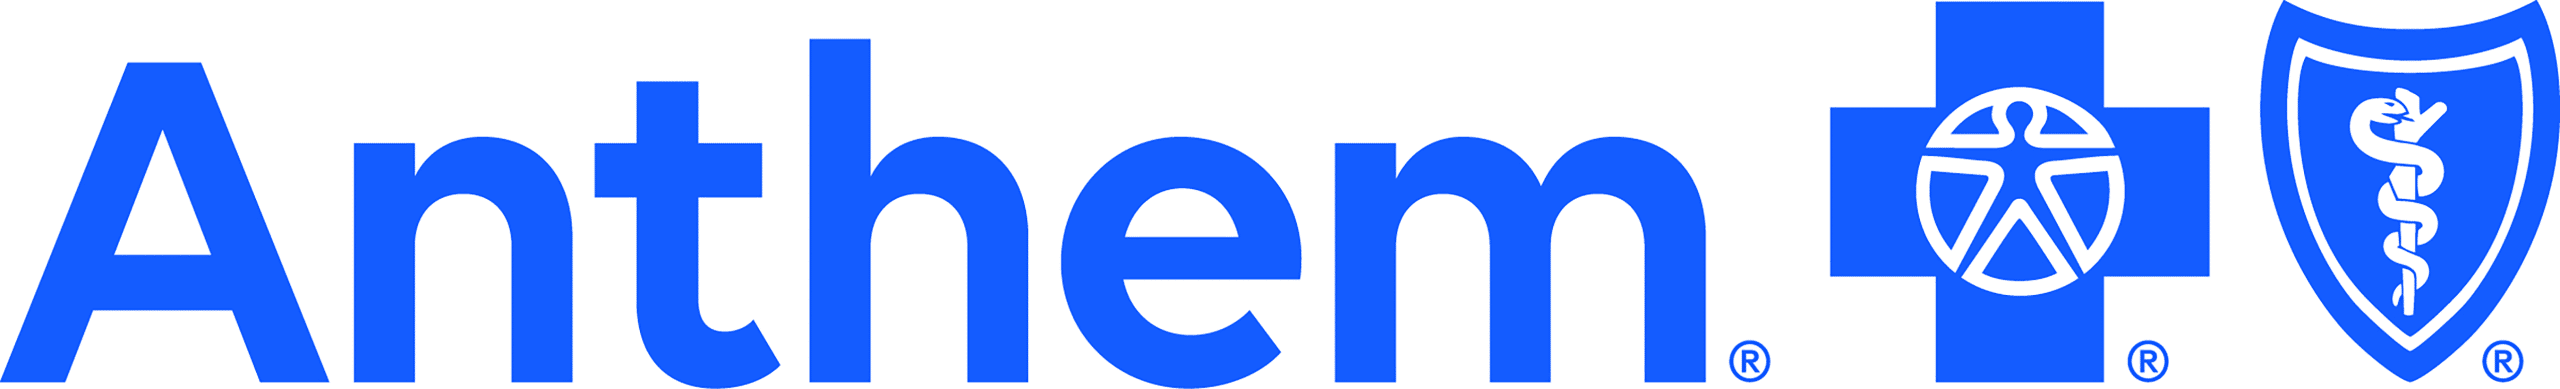 Anthem new logo